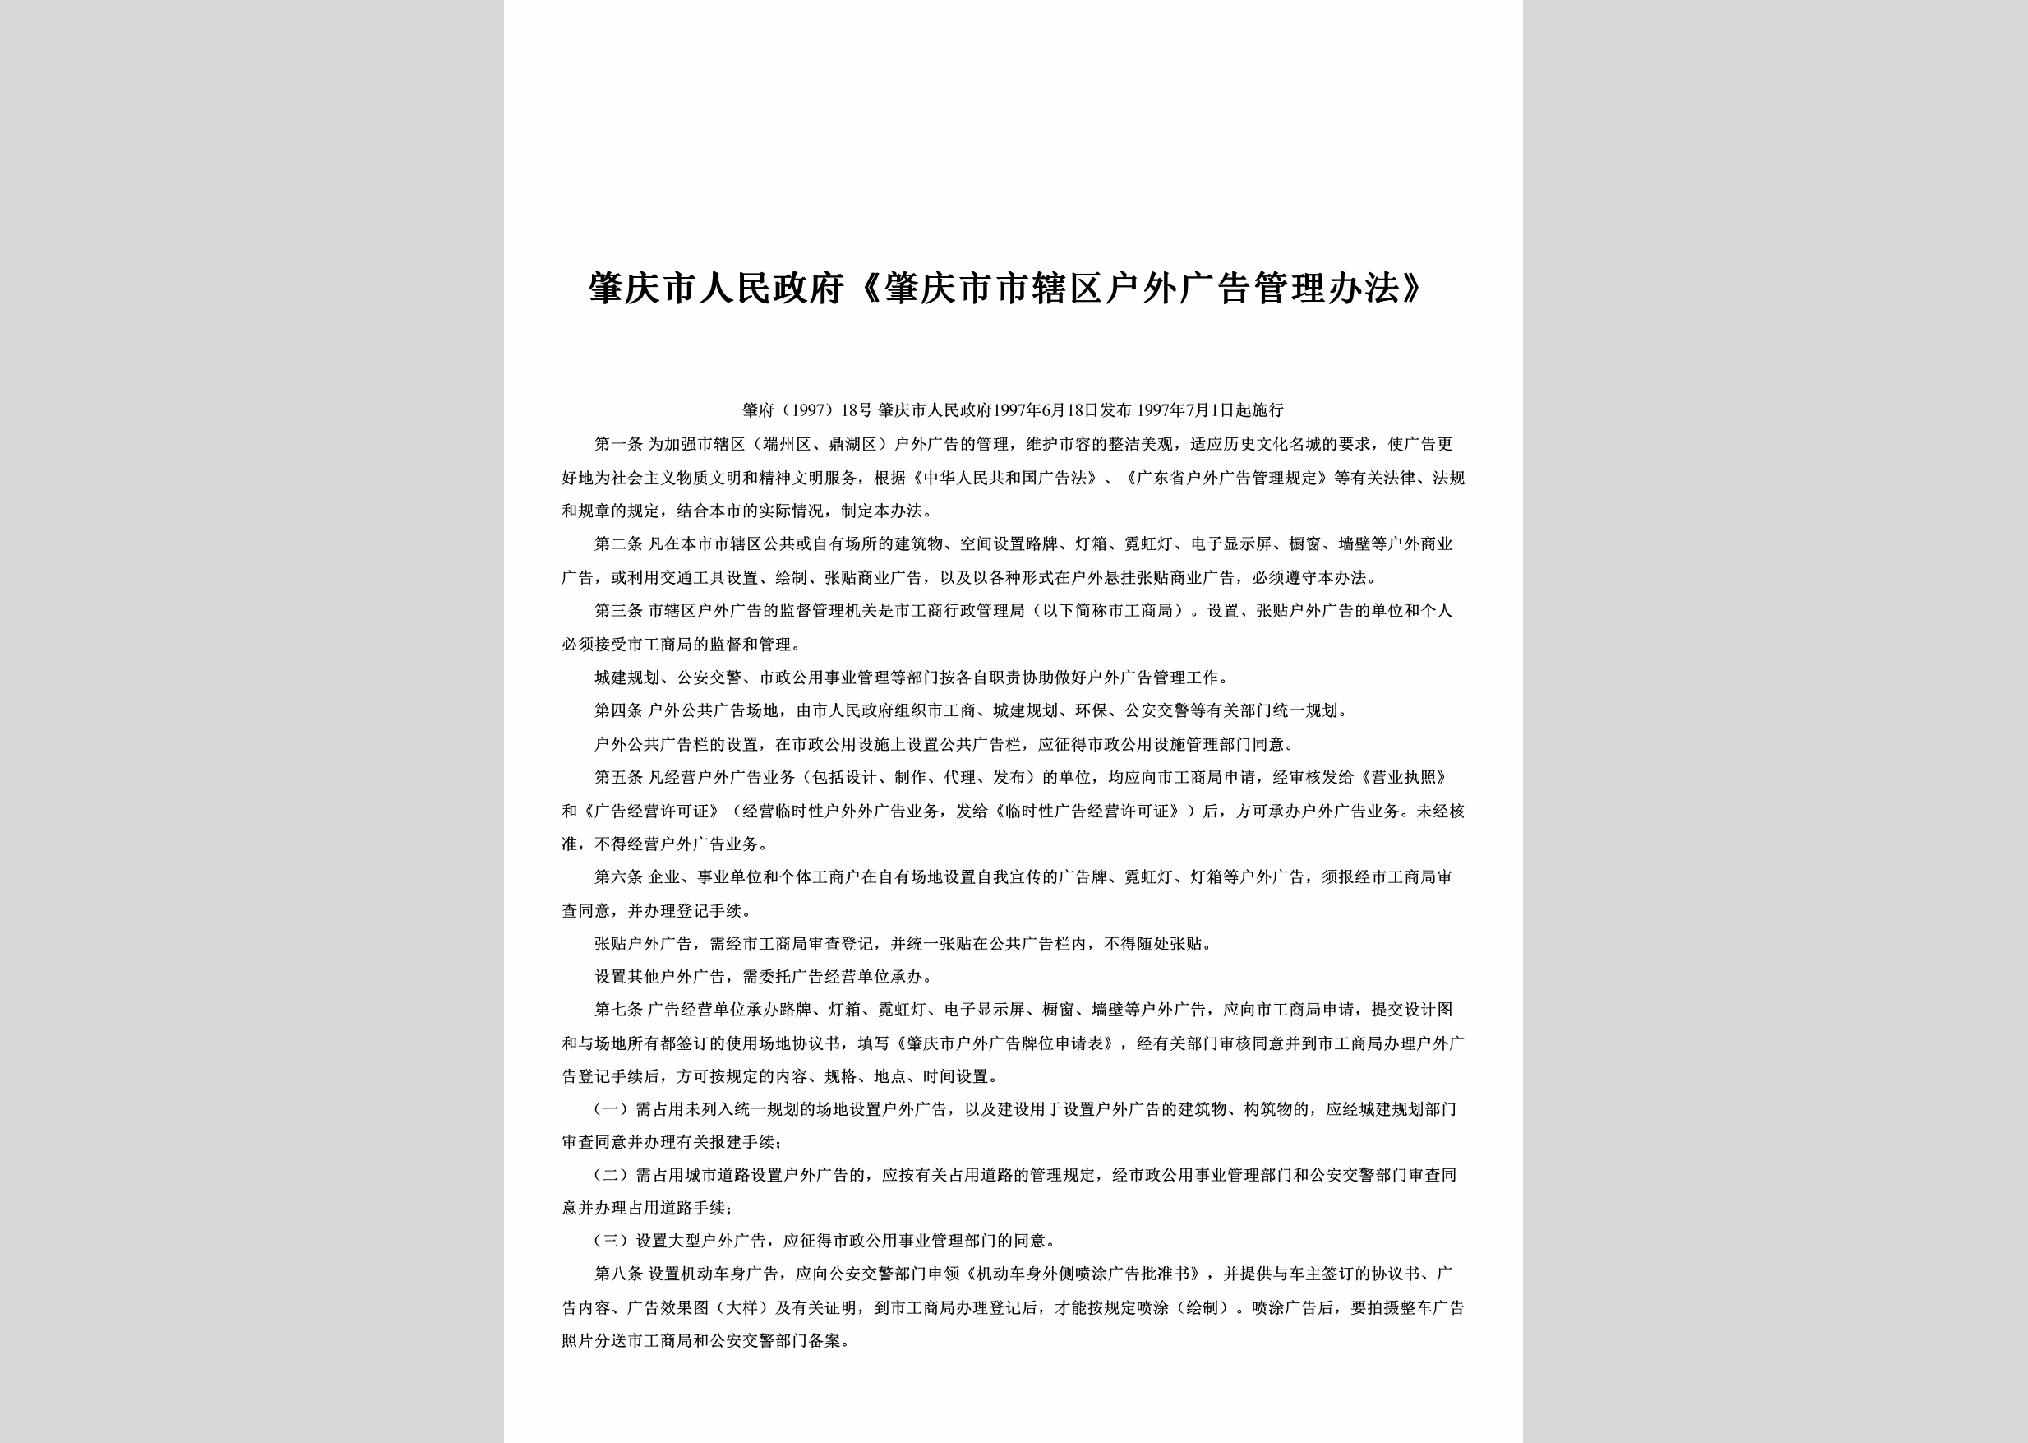 肇府[1997]18号：《肇庆市市辖区户外广告管理办法》